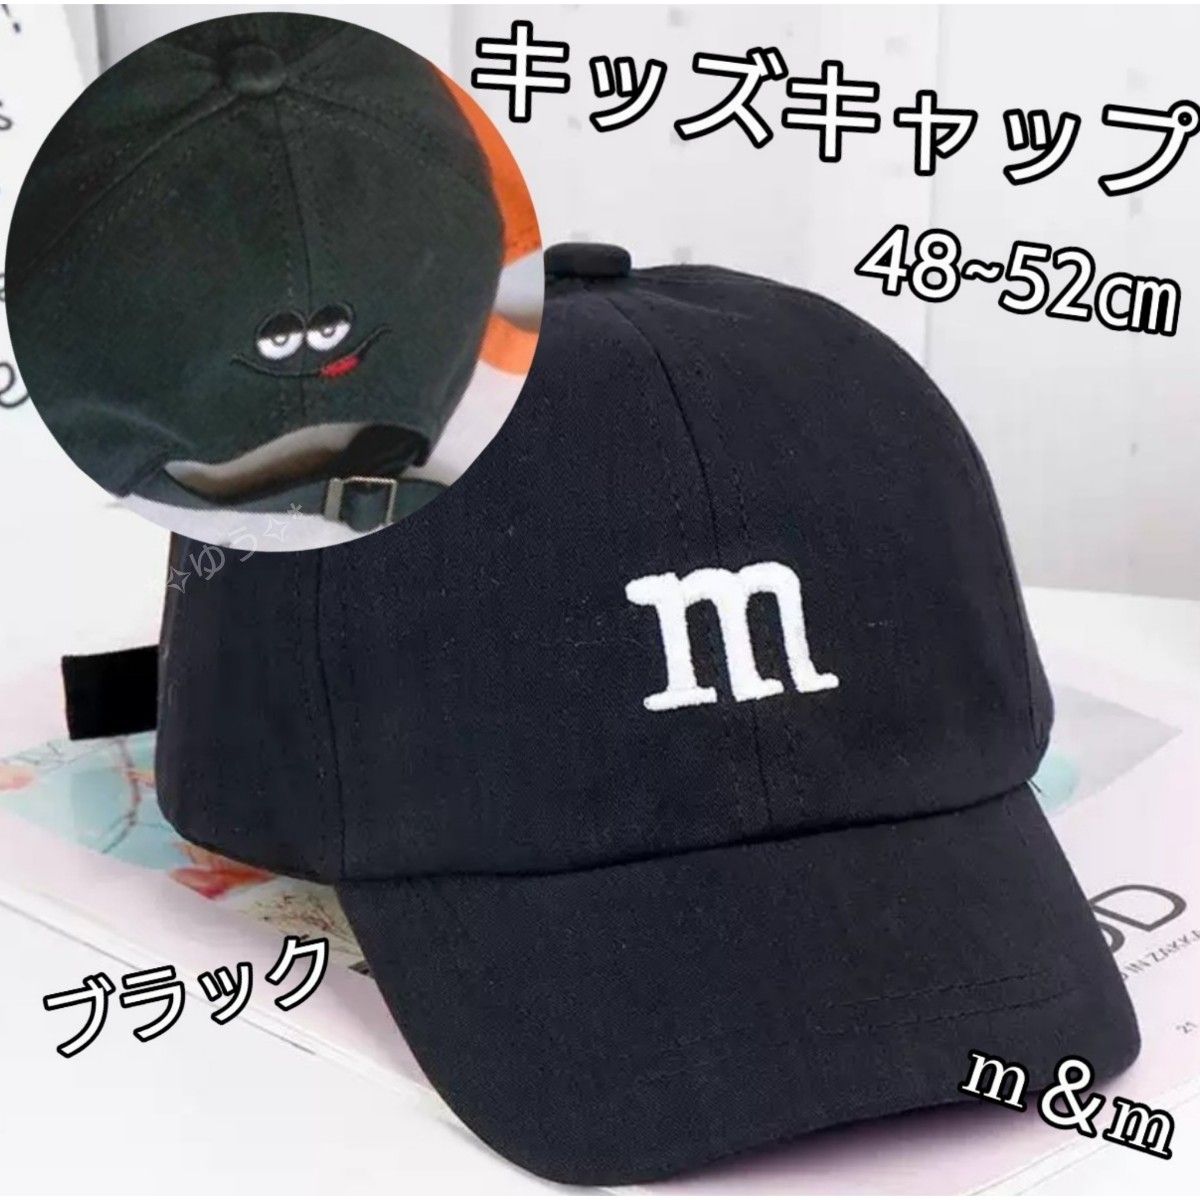 キッズキャップ 帽子 m&mロゴ 刺繍 男女兼用 48~52㎝ ブラック 黒